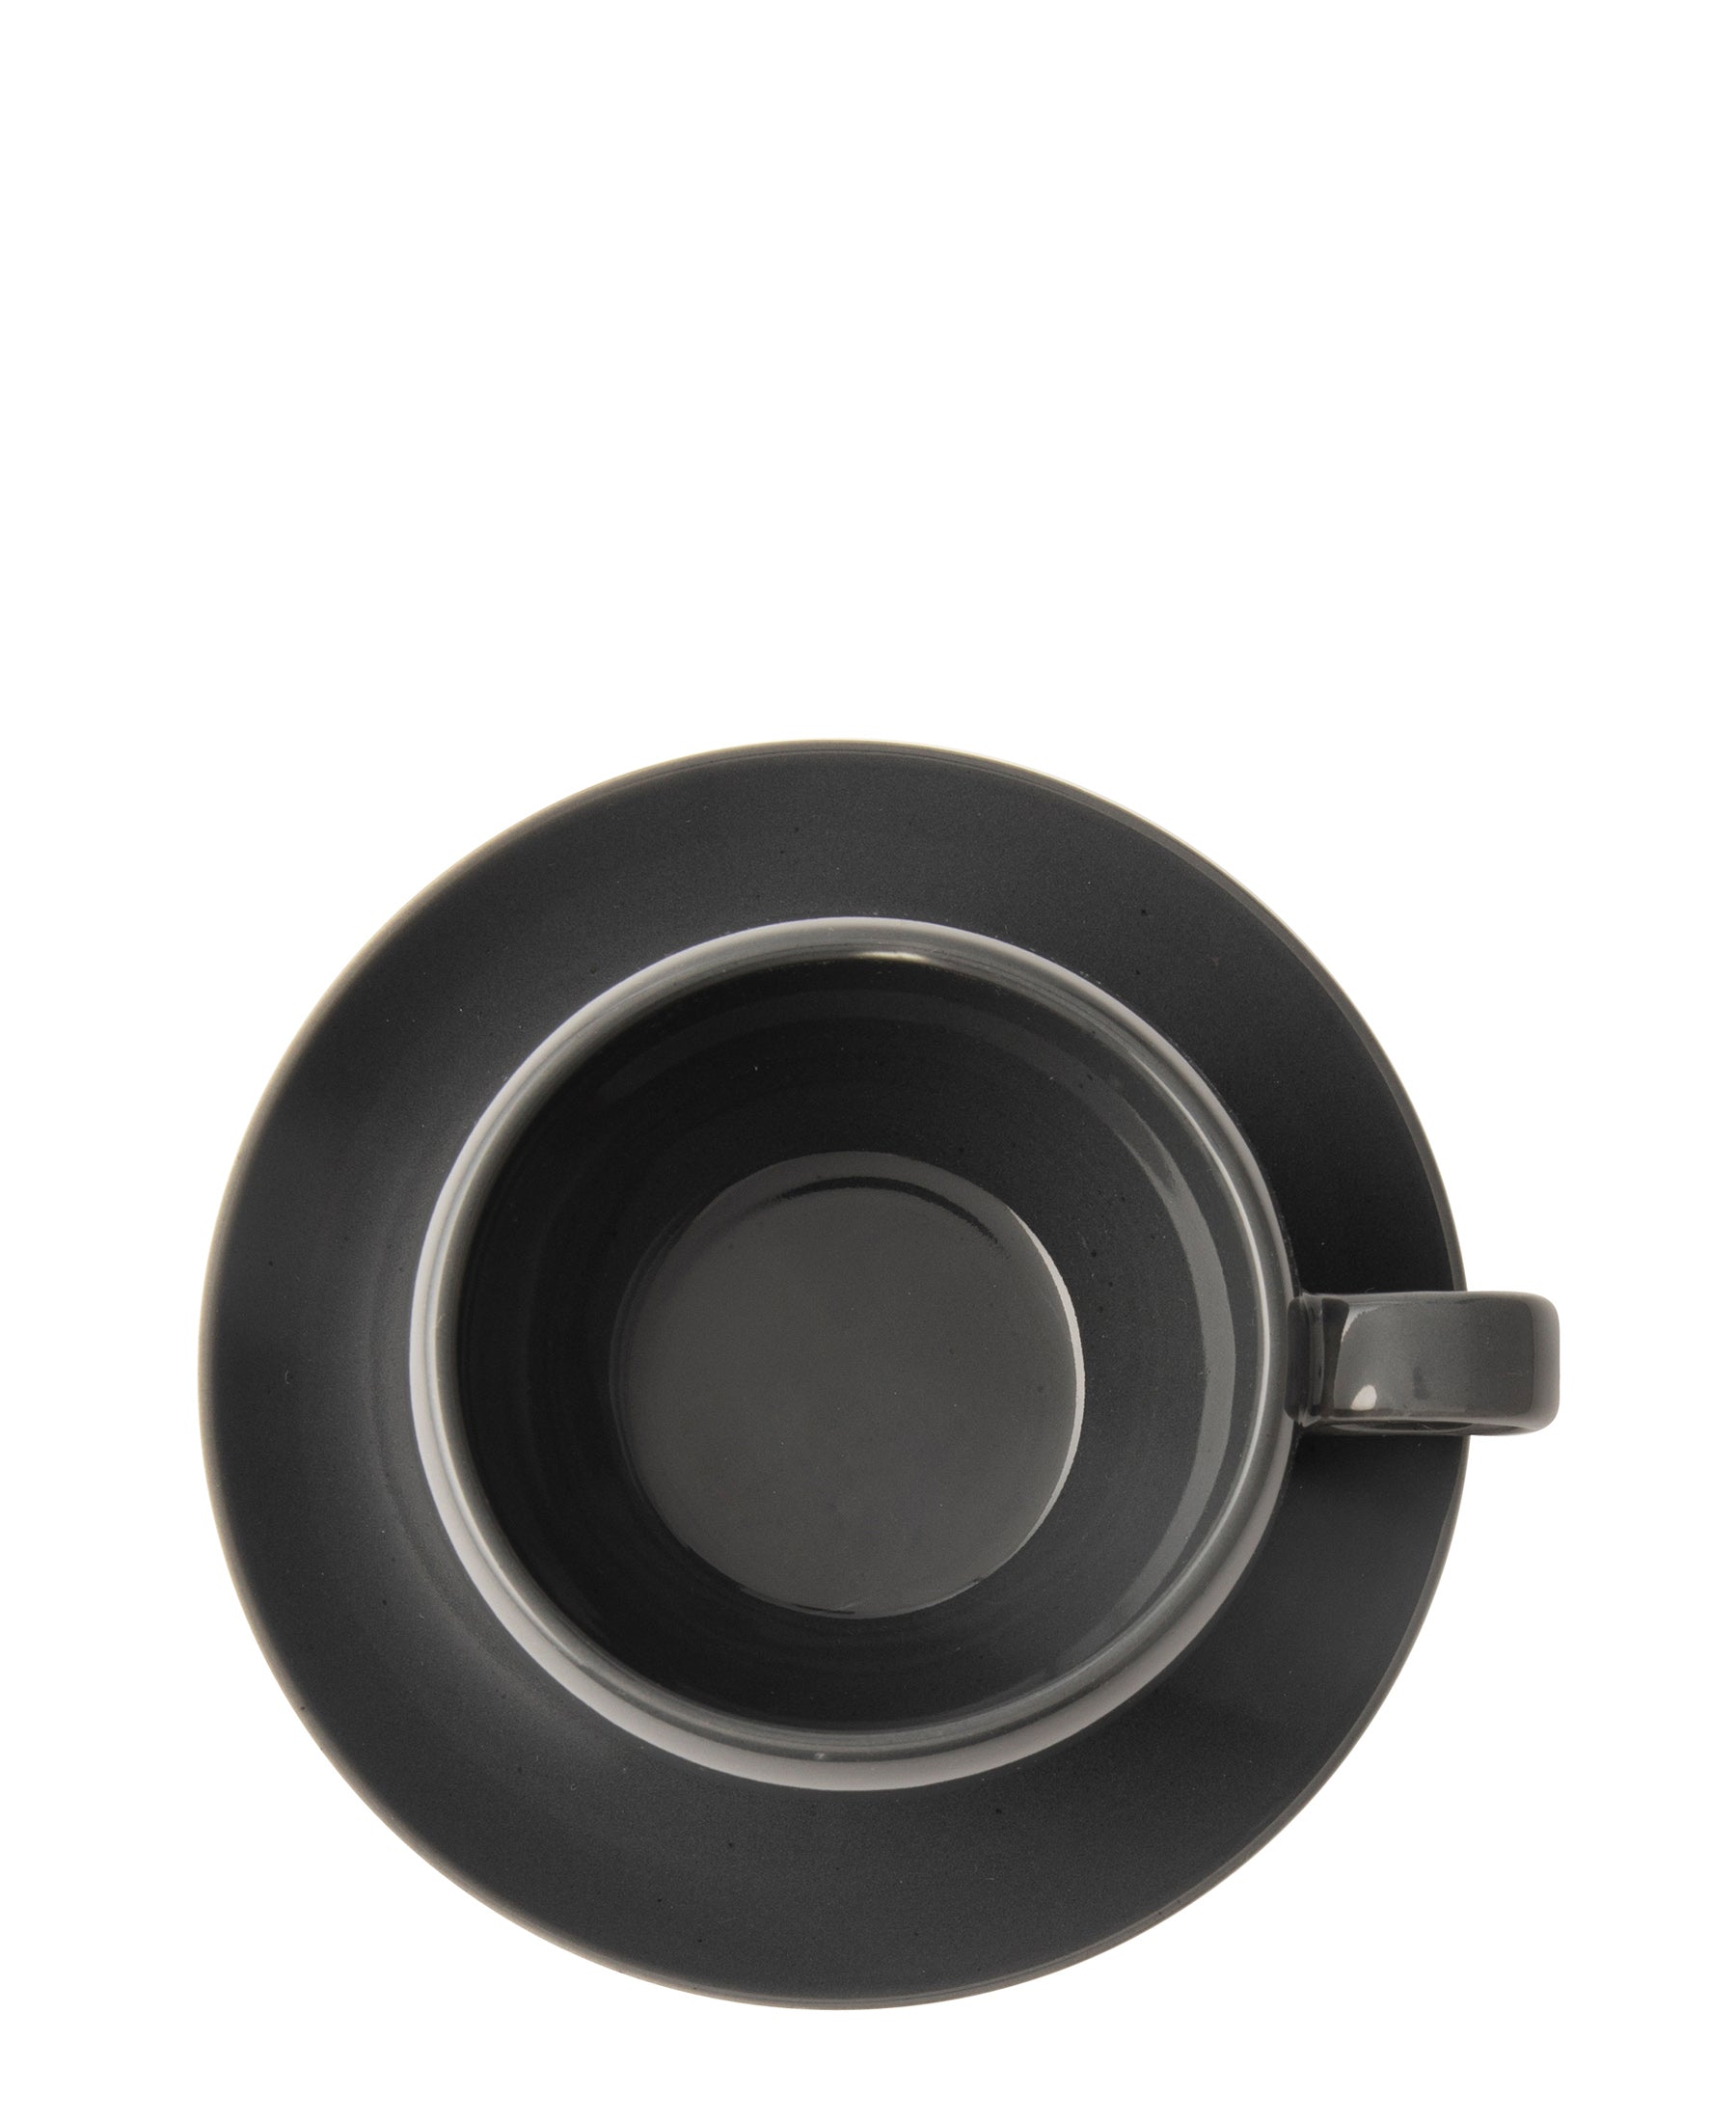 Omada Irregular Cup & Saucer - Dark Grey